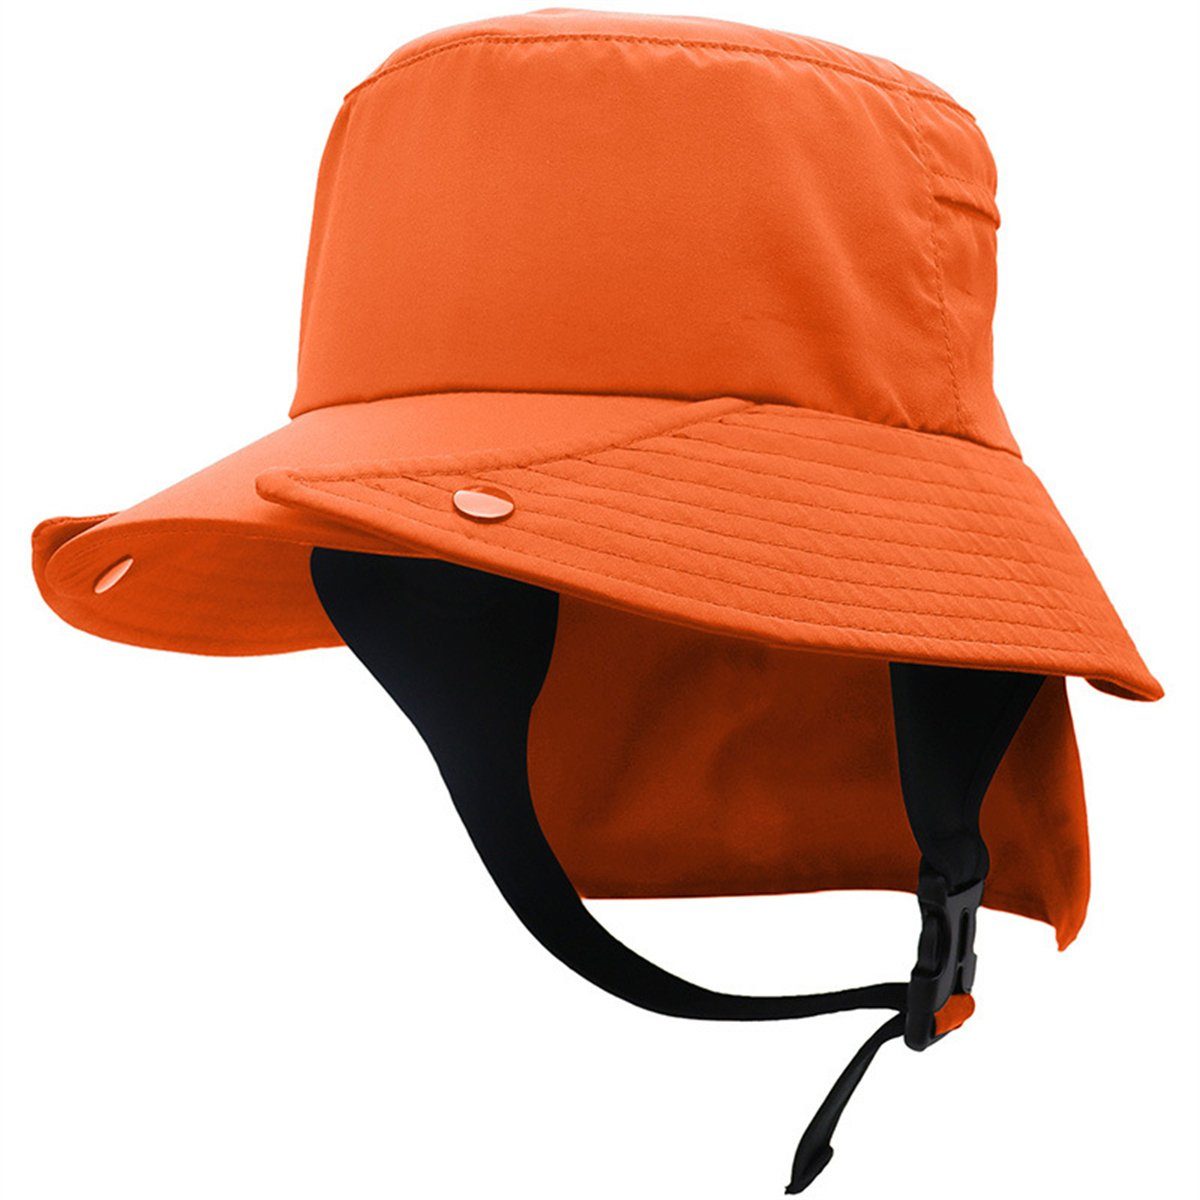 und Rad- Fischerhut Schiebermütze für UPF50+ orange Mütze Outdoor-Abenteuer trocknende Schnell Krempe Discaver mit großer abnehmbarer